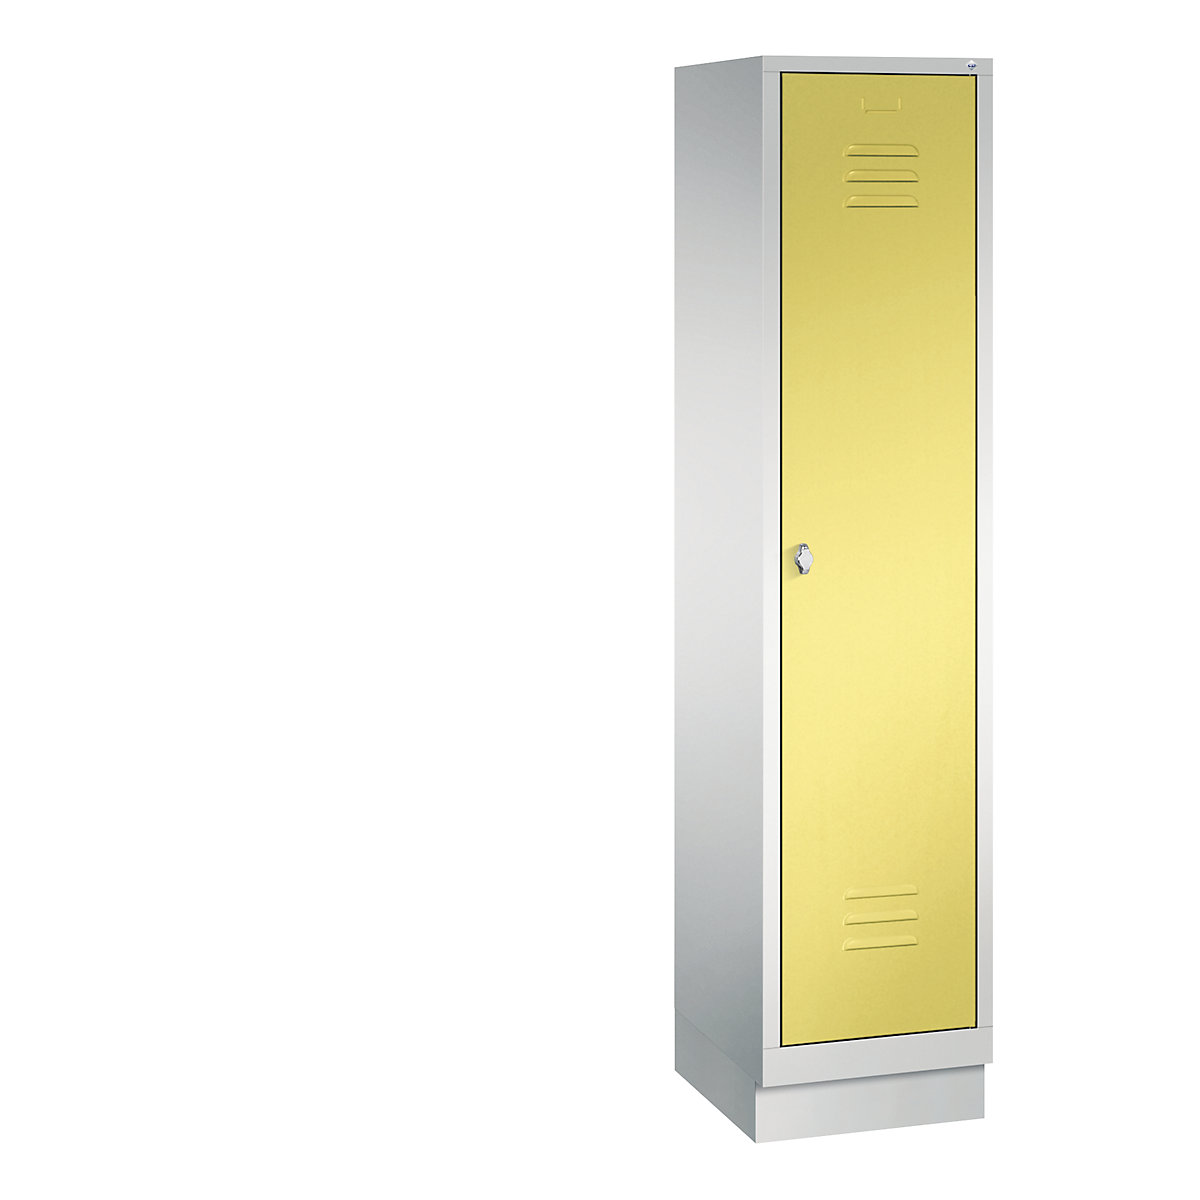 Šatní skříň se soklem CLASSIC – C+P, 1 oddíl, šířka oddílu 400 mm, světlá šedá / sírová žlutá